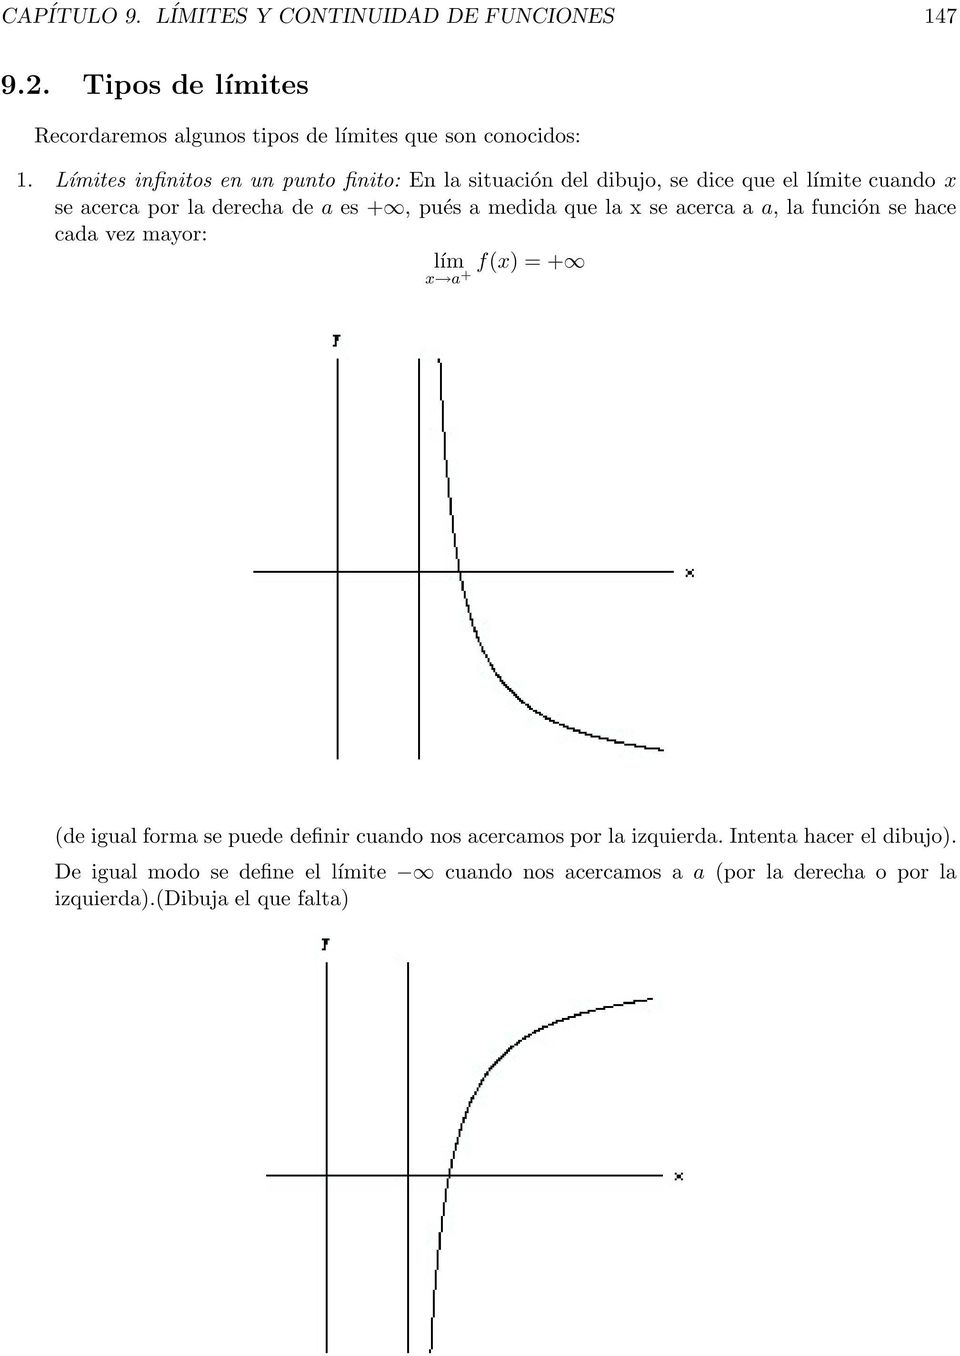 medida que la se acerca a a, la función se hace cada vez mayor: f() =+ a + (de igual forma se puede definir cuando nos acercamos por la